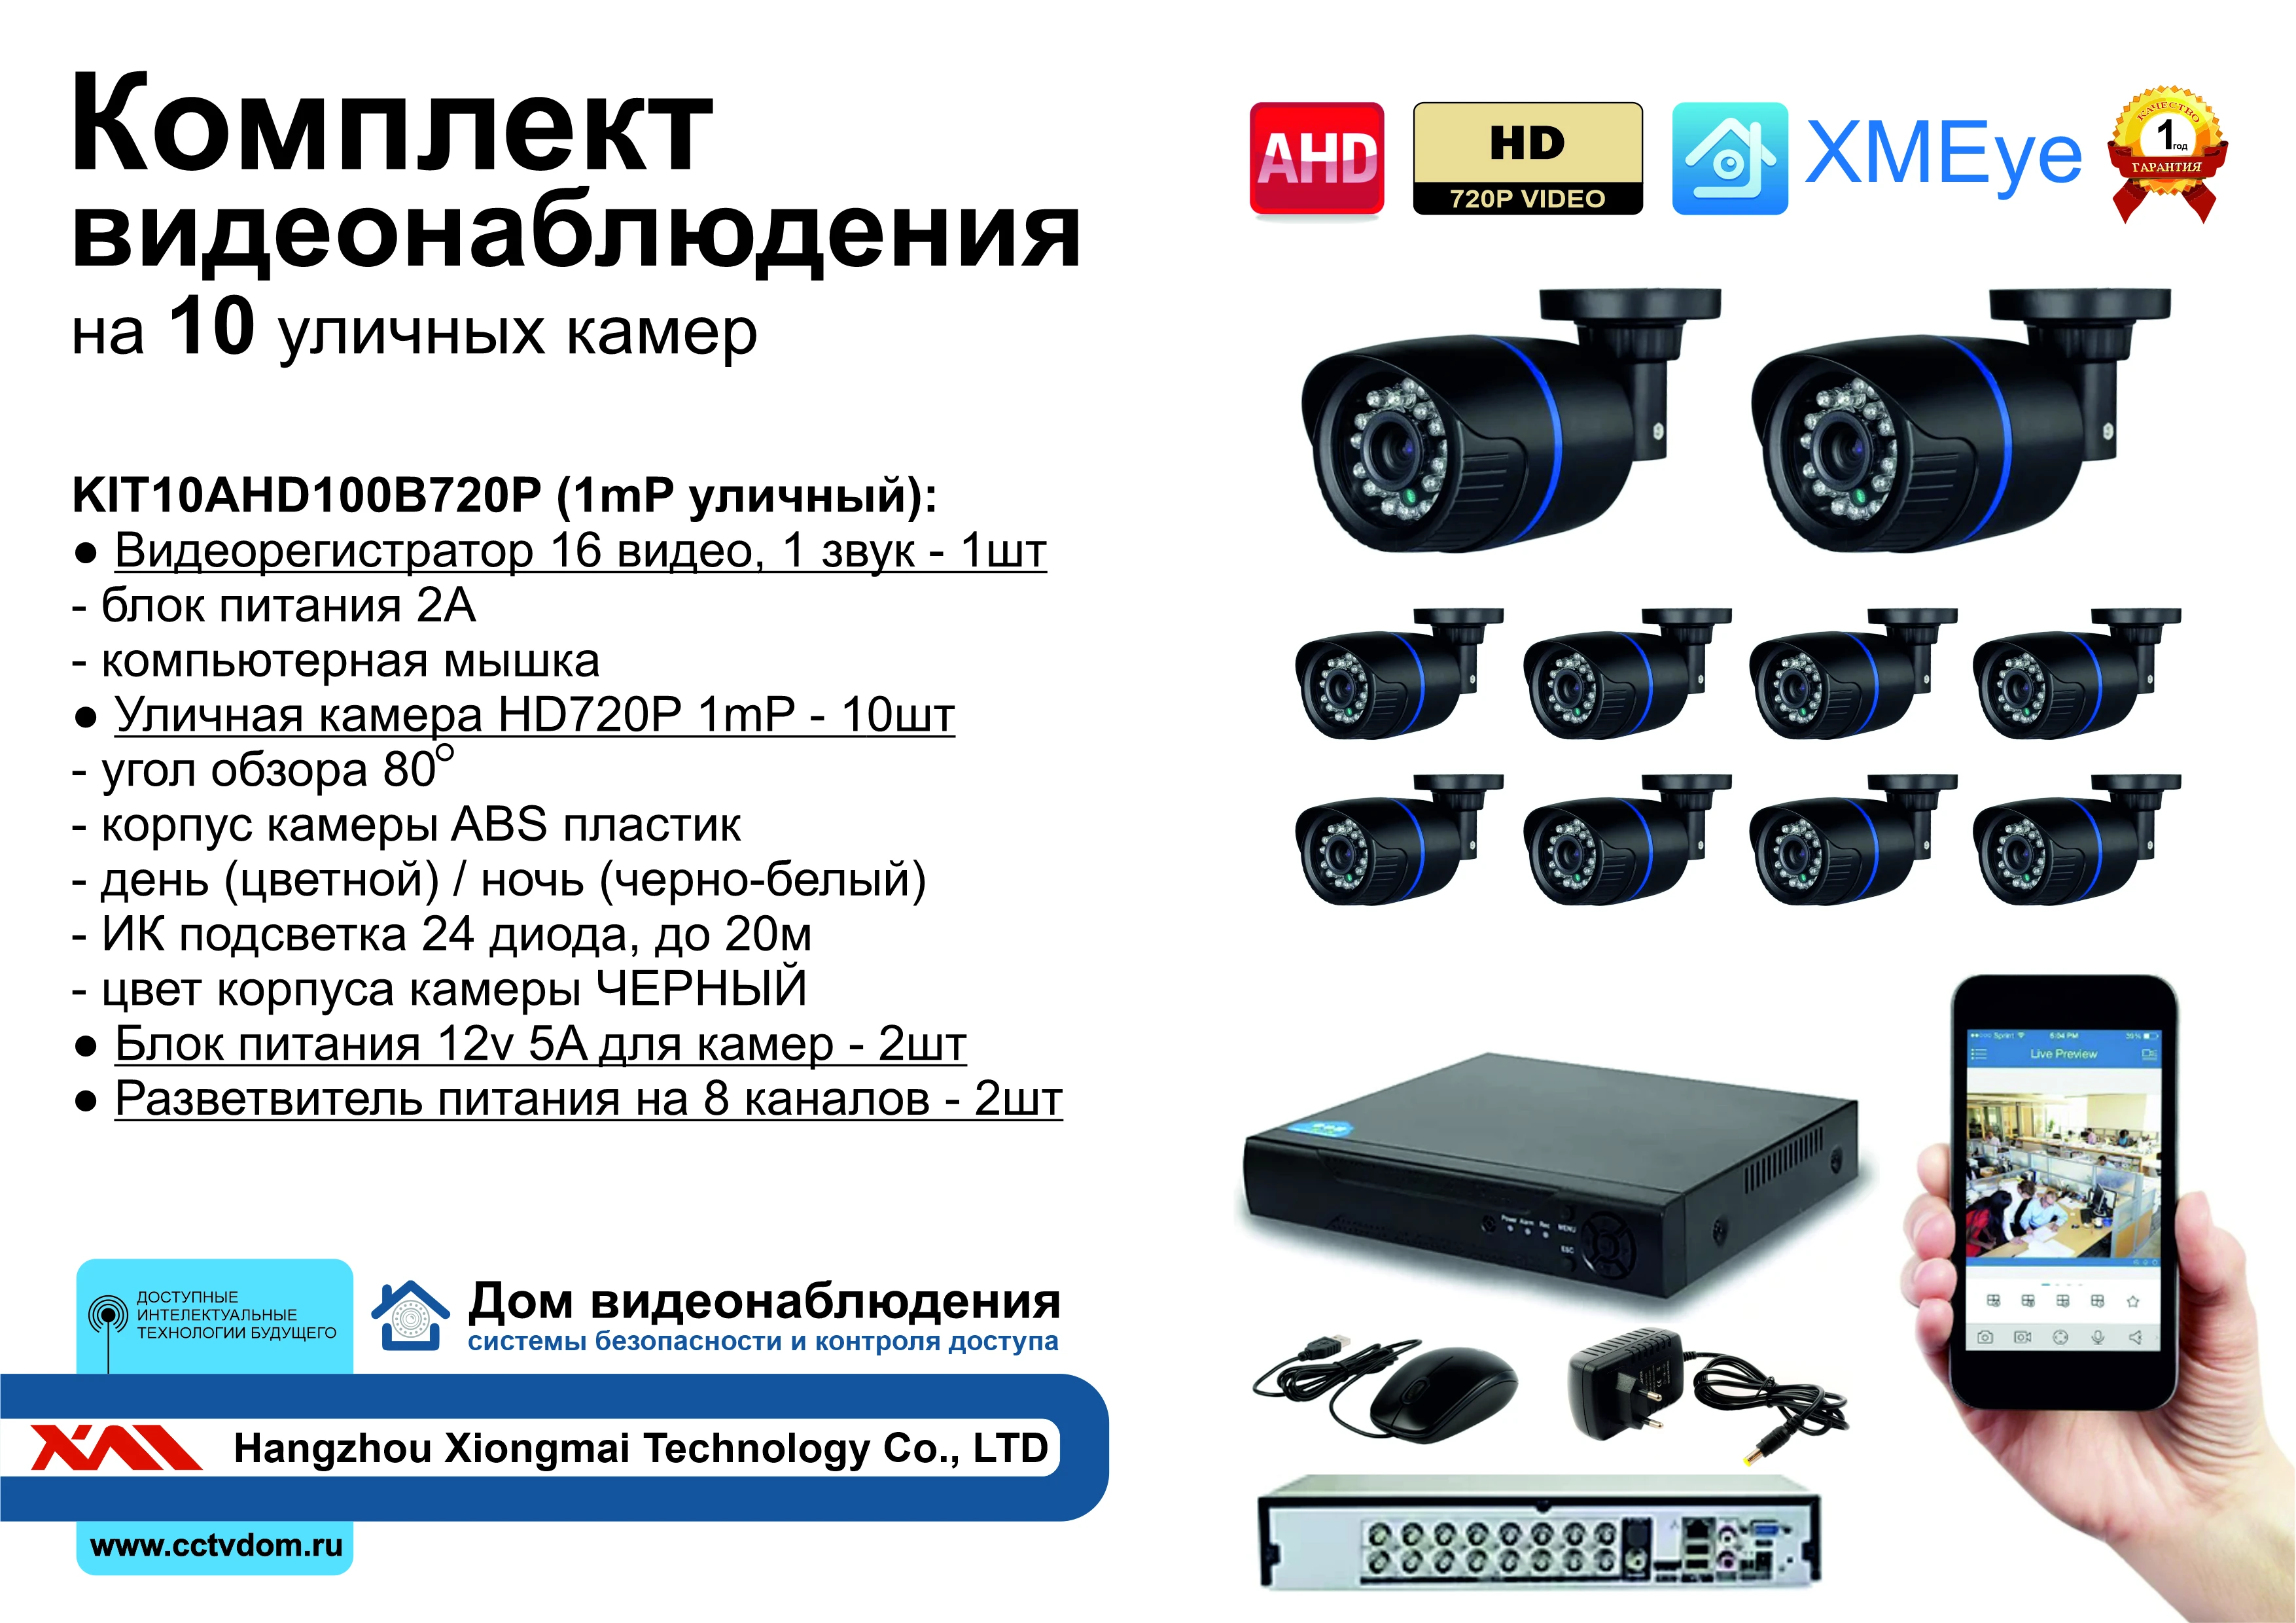 Фото Комплект видеонаблюдения на 10 уличных AHD камер 1мП. Видеорегистратор + блоки